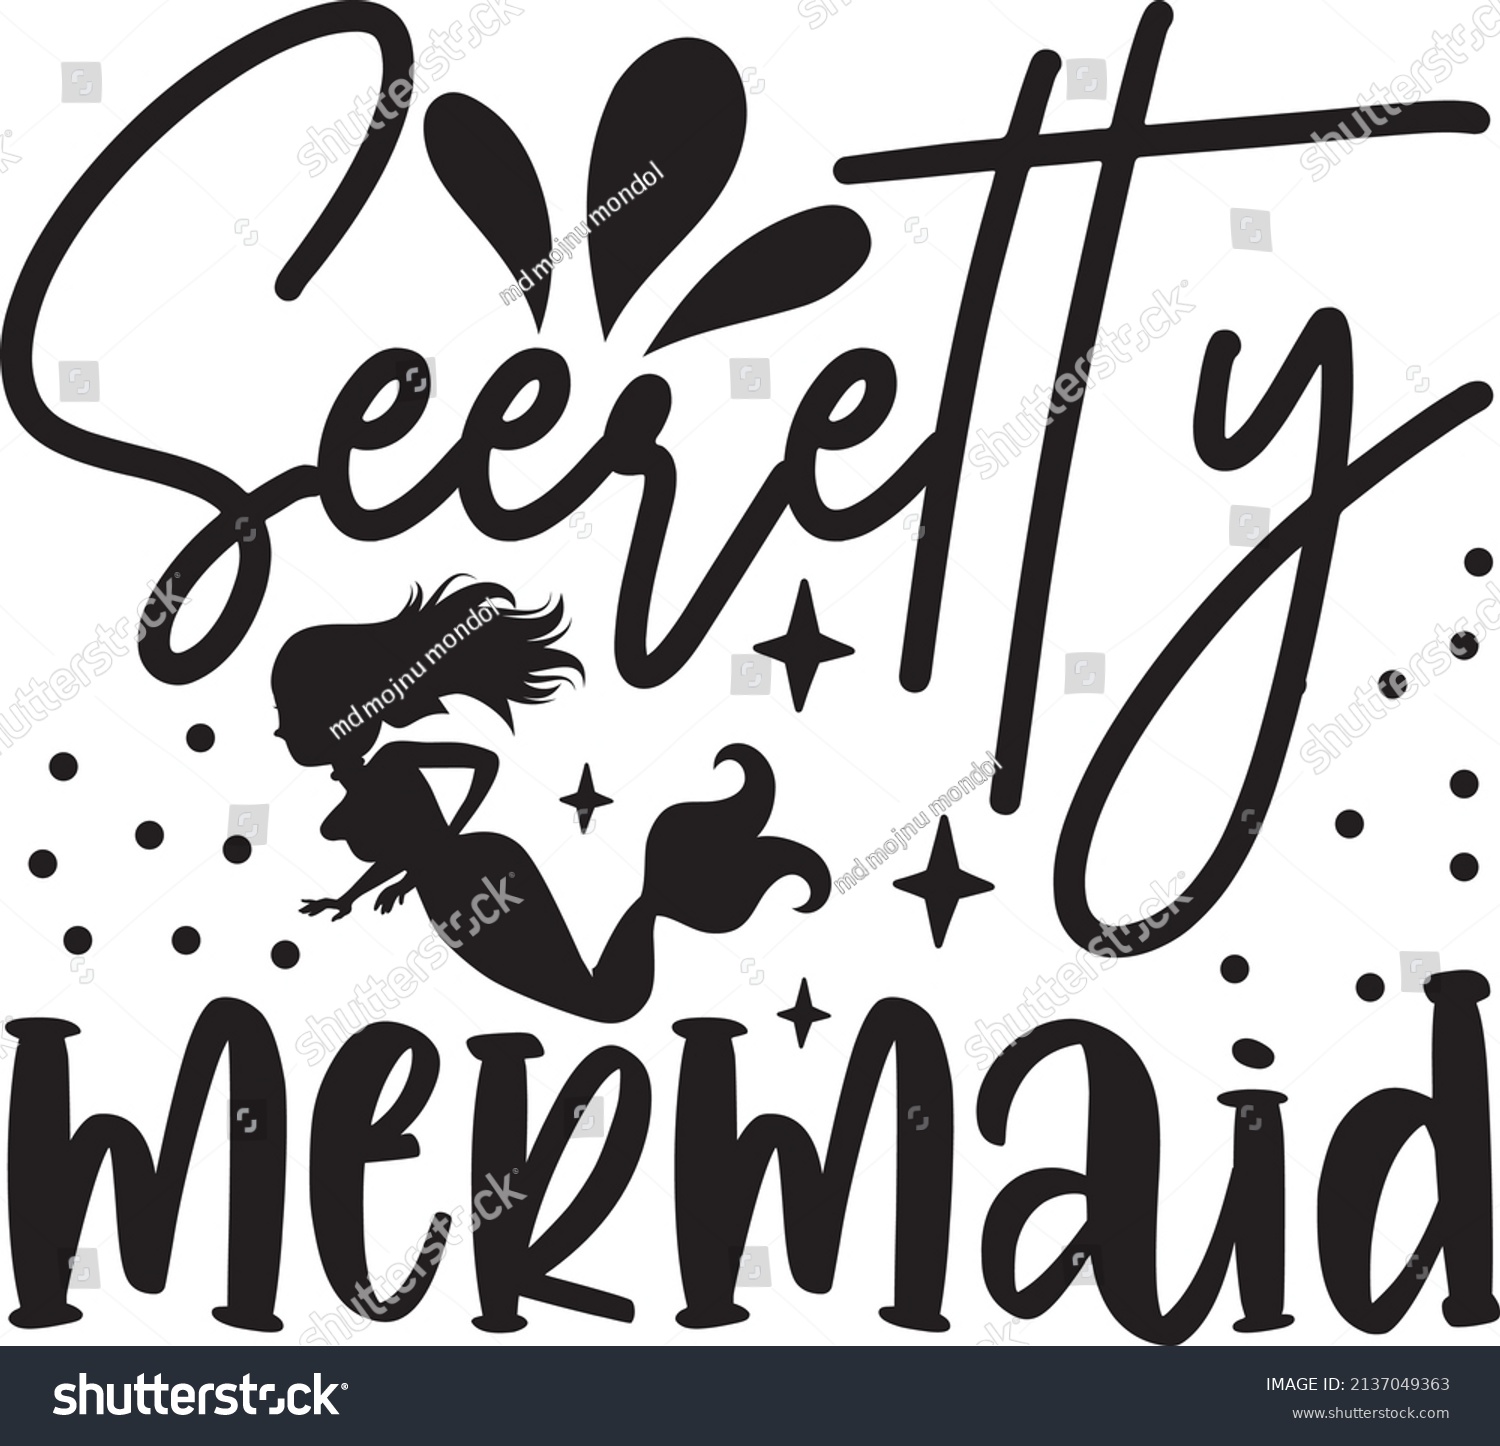 SVG of  seeretty mermaid mermaid svg design svg